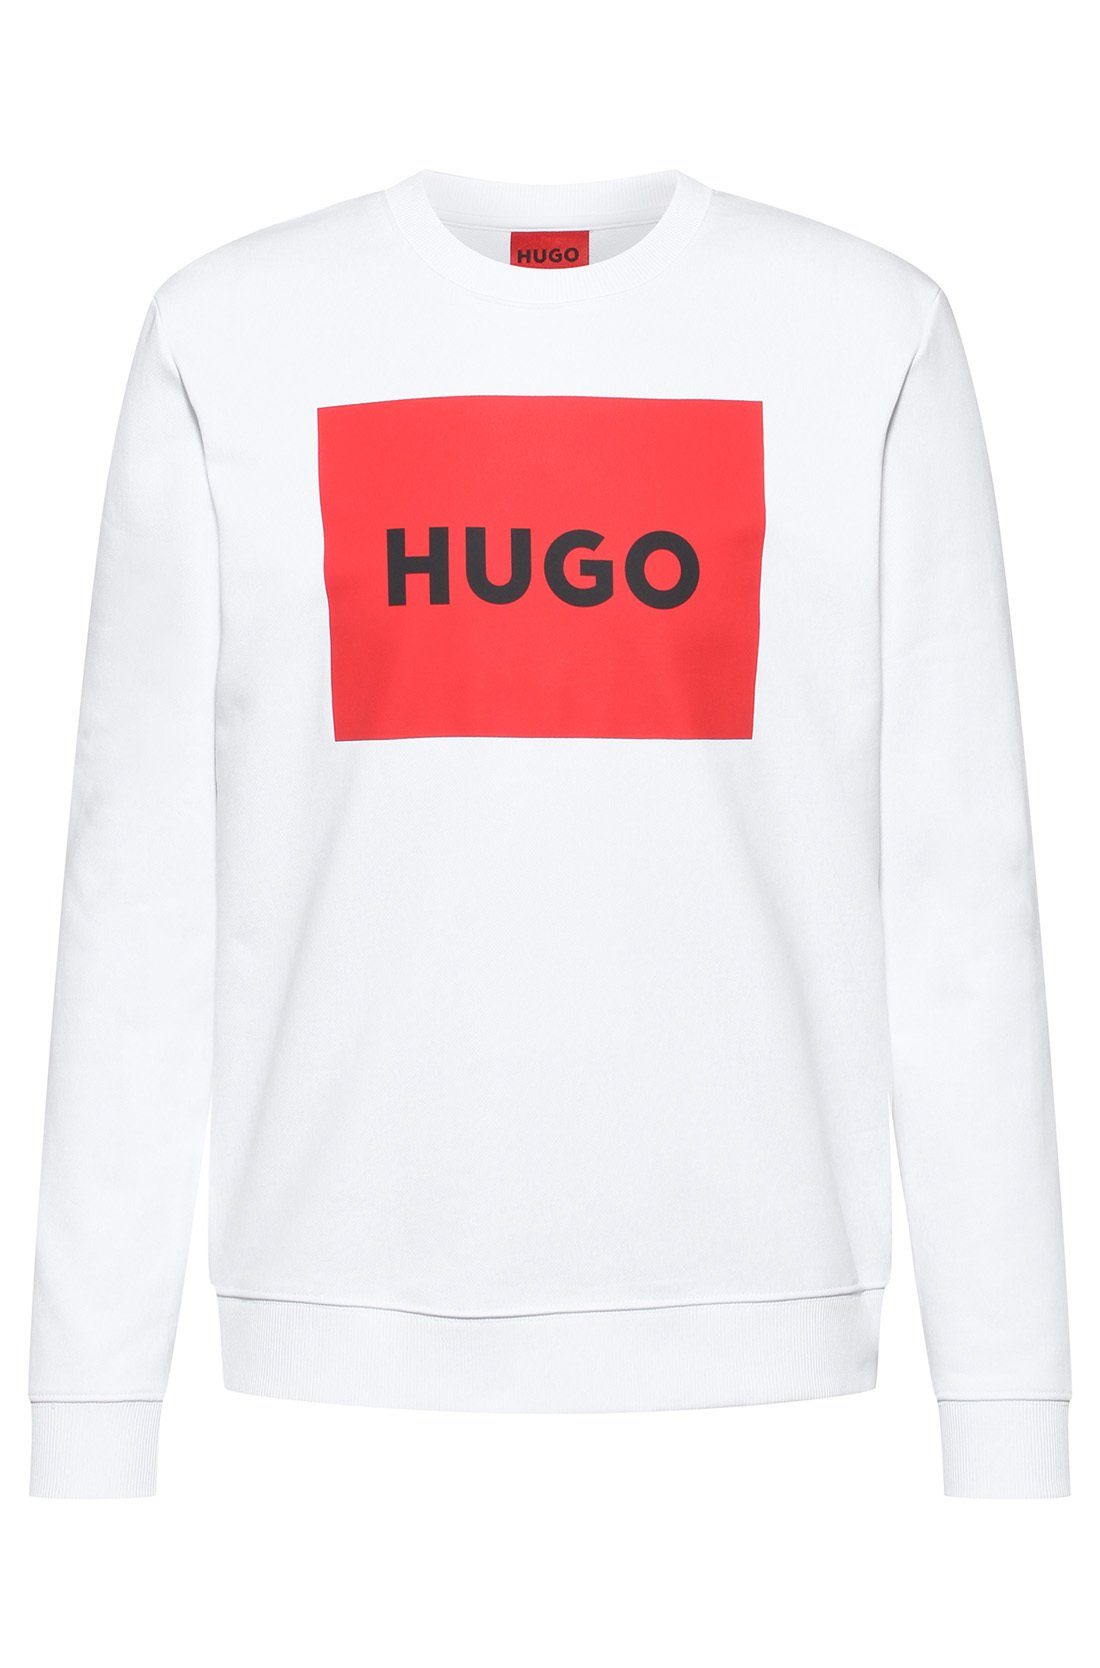 Sweater Weiß Duragol222, Sweatshirt HUGO Rundhals Sweatshirt, - Herren